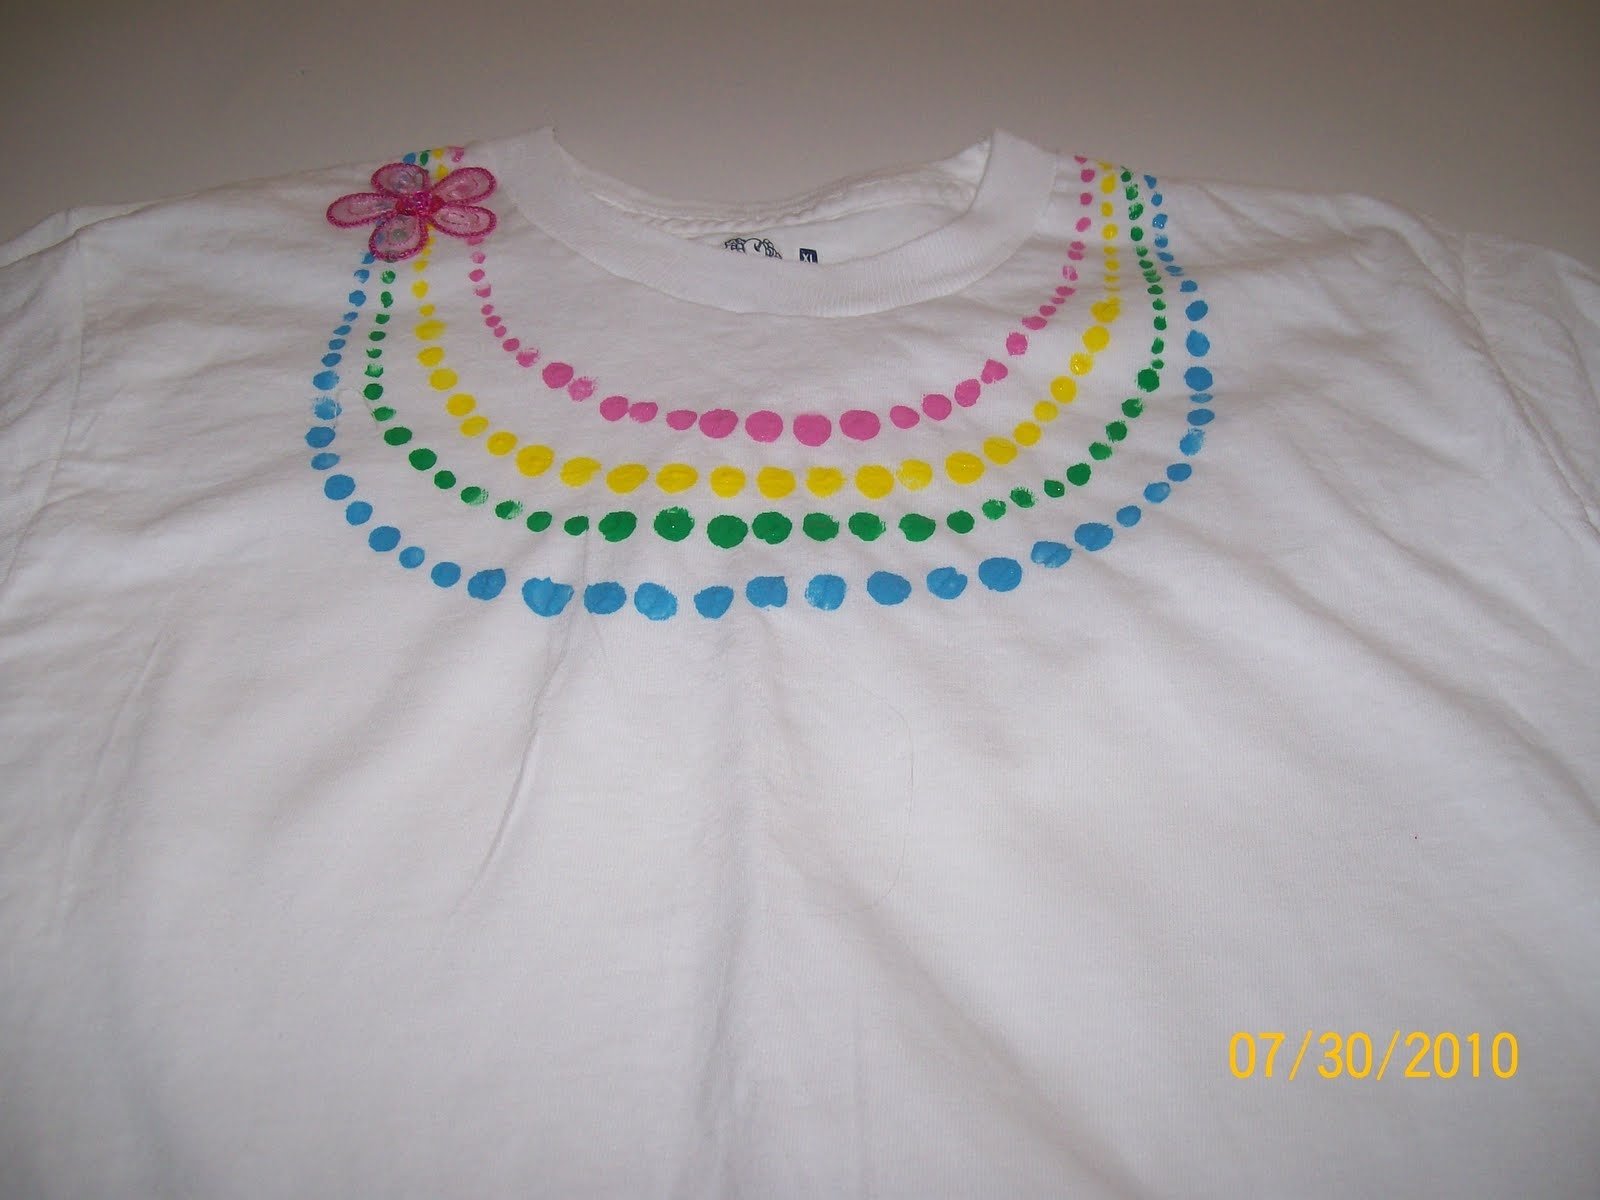 10 Stylish Puffy Paint T Shirt Ideas puffy paint shirt ideas google search family reunion pinterest 2023